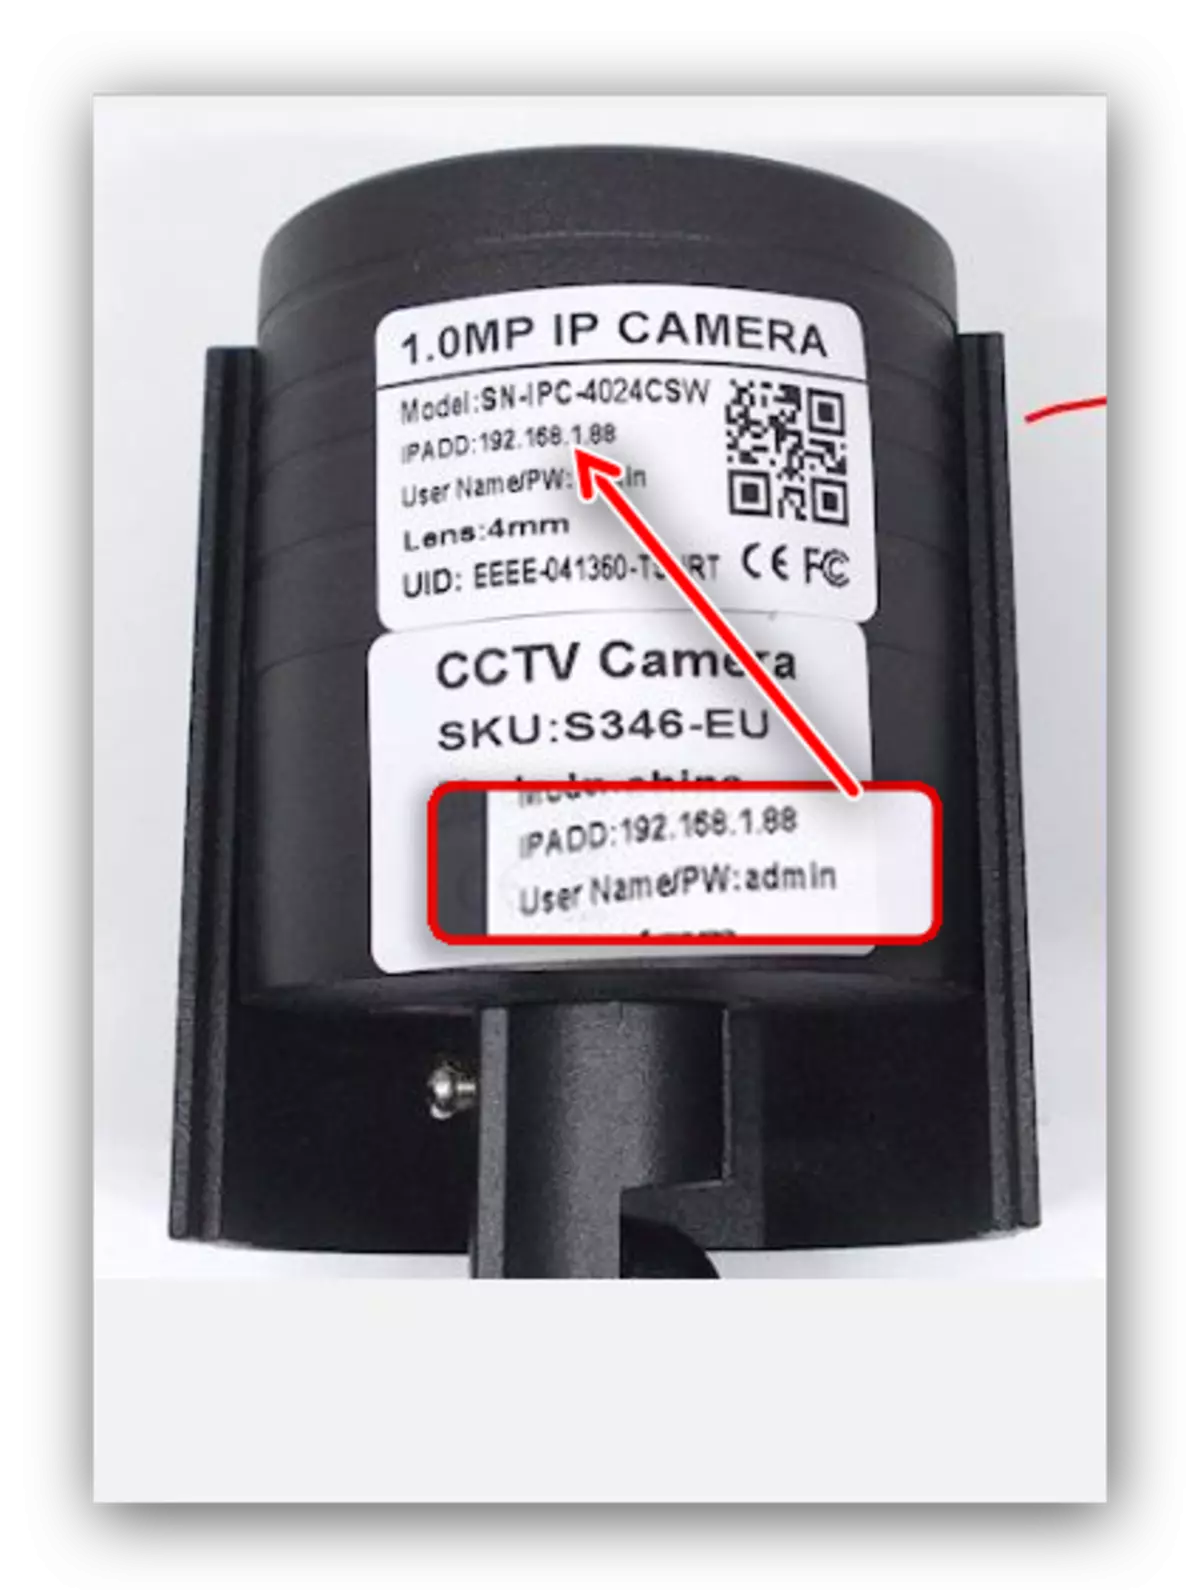 राउटर के माध्यम से आईपी कैमरा कनेक्ट करने के लिए पता का पता लगाएं